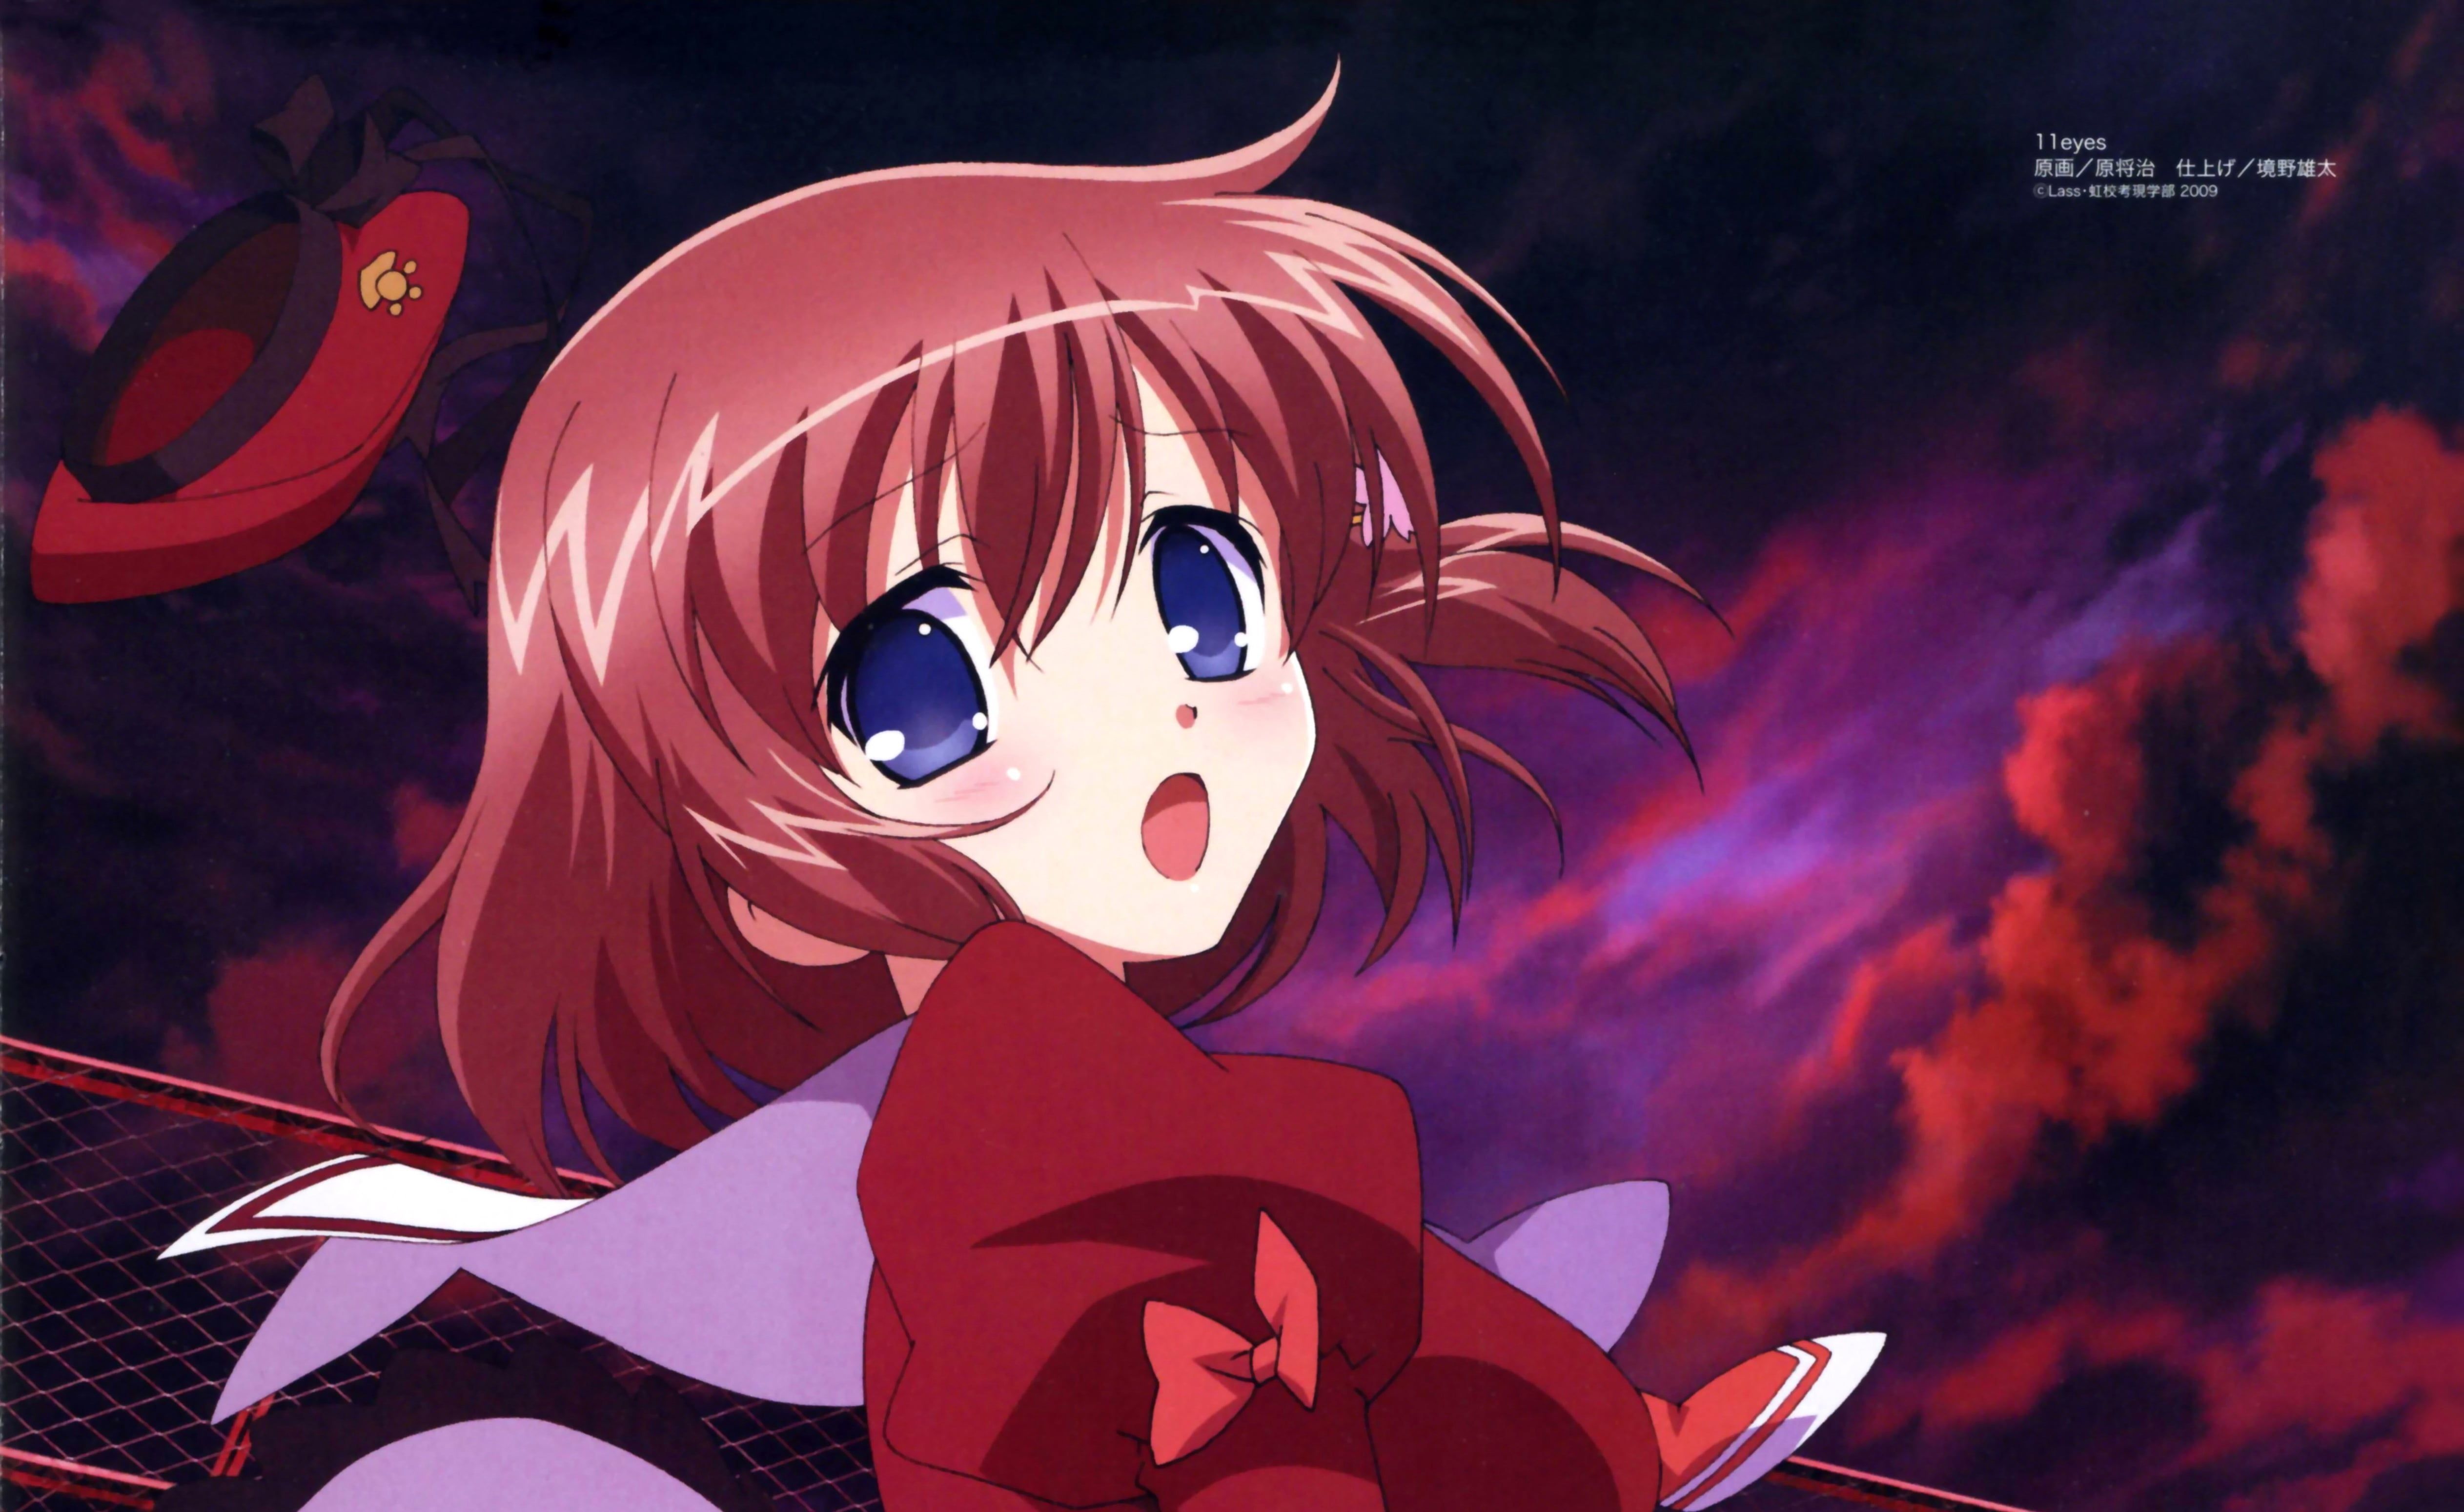 Female anime character illustration, 11 eyes, girl, blue eyes, sky